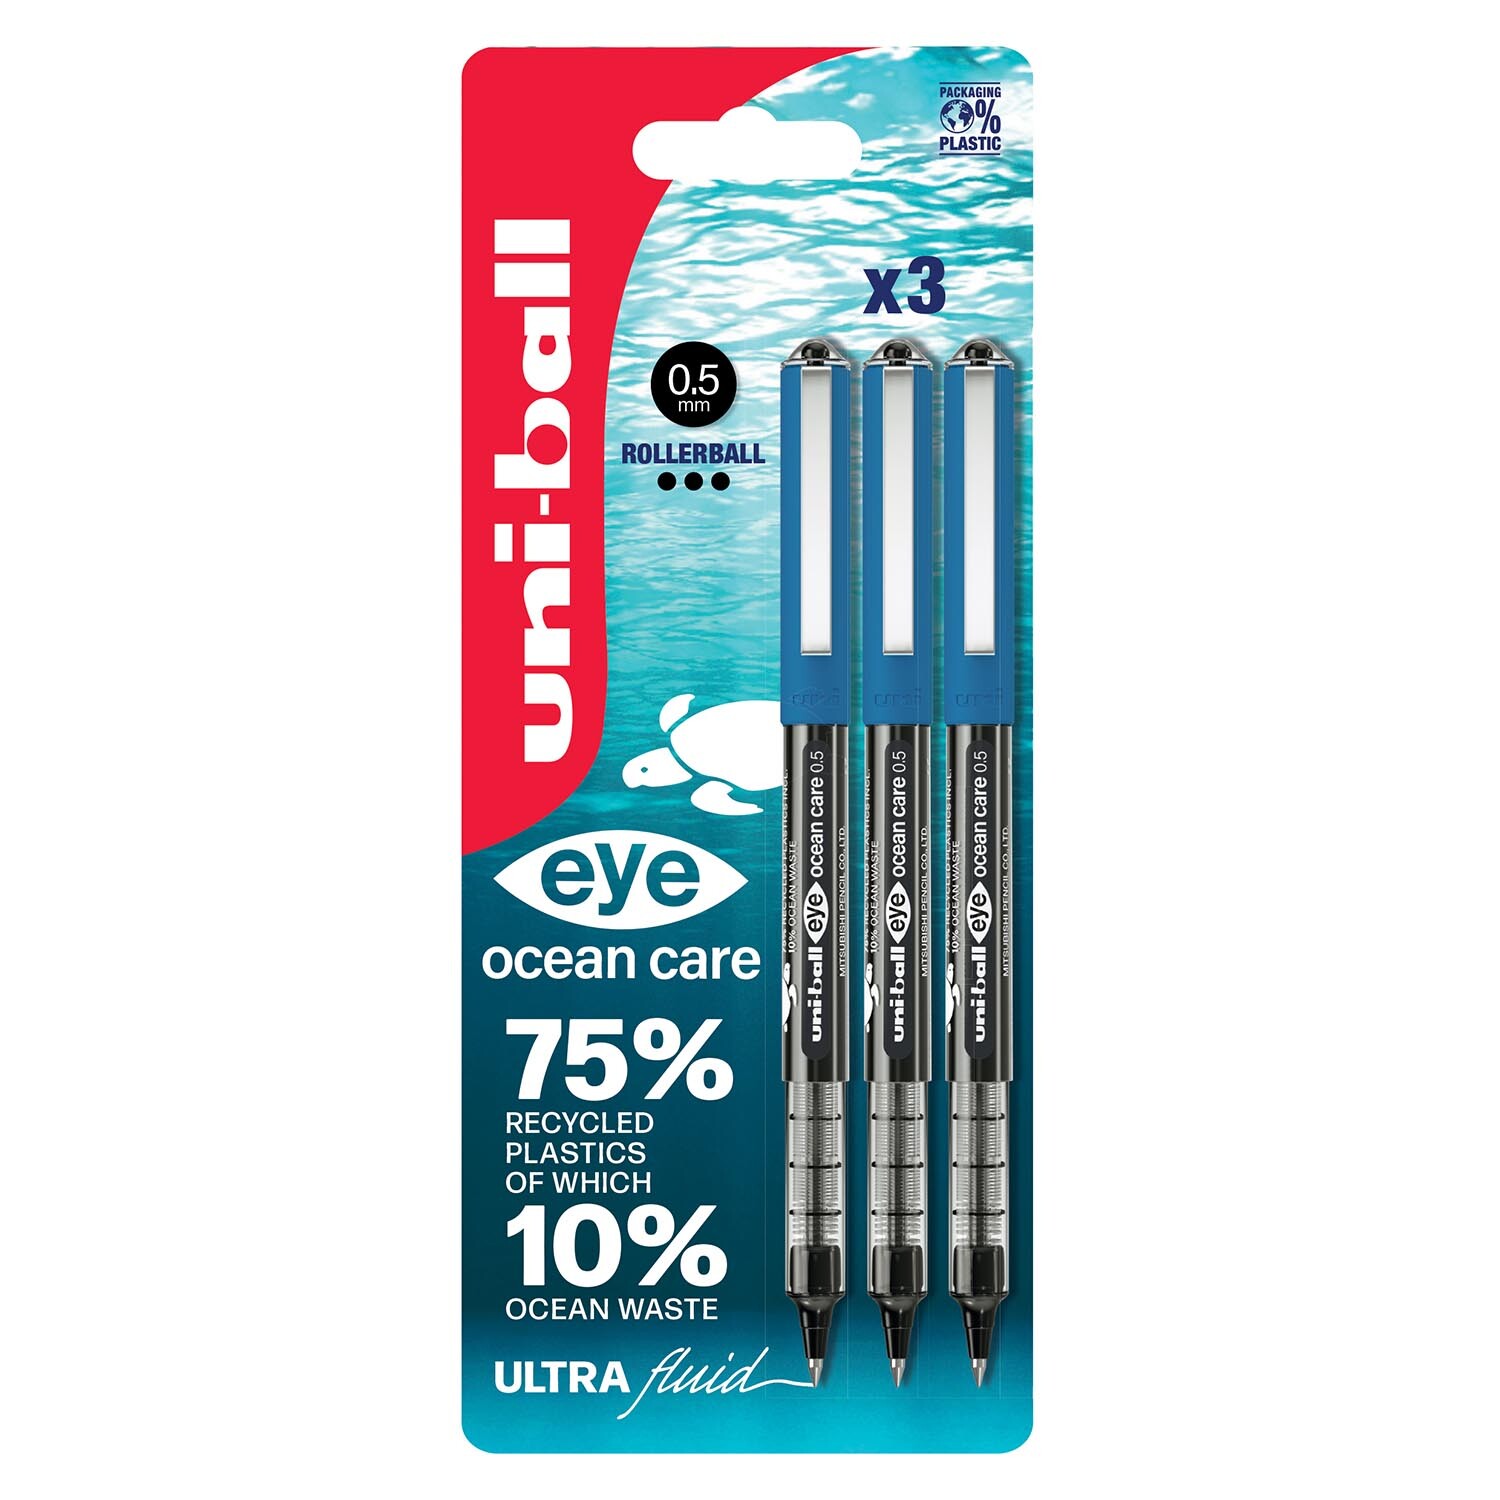 Uniball Black Eye Ocean Care Pen 3 Pack Image